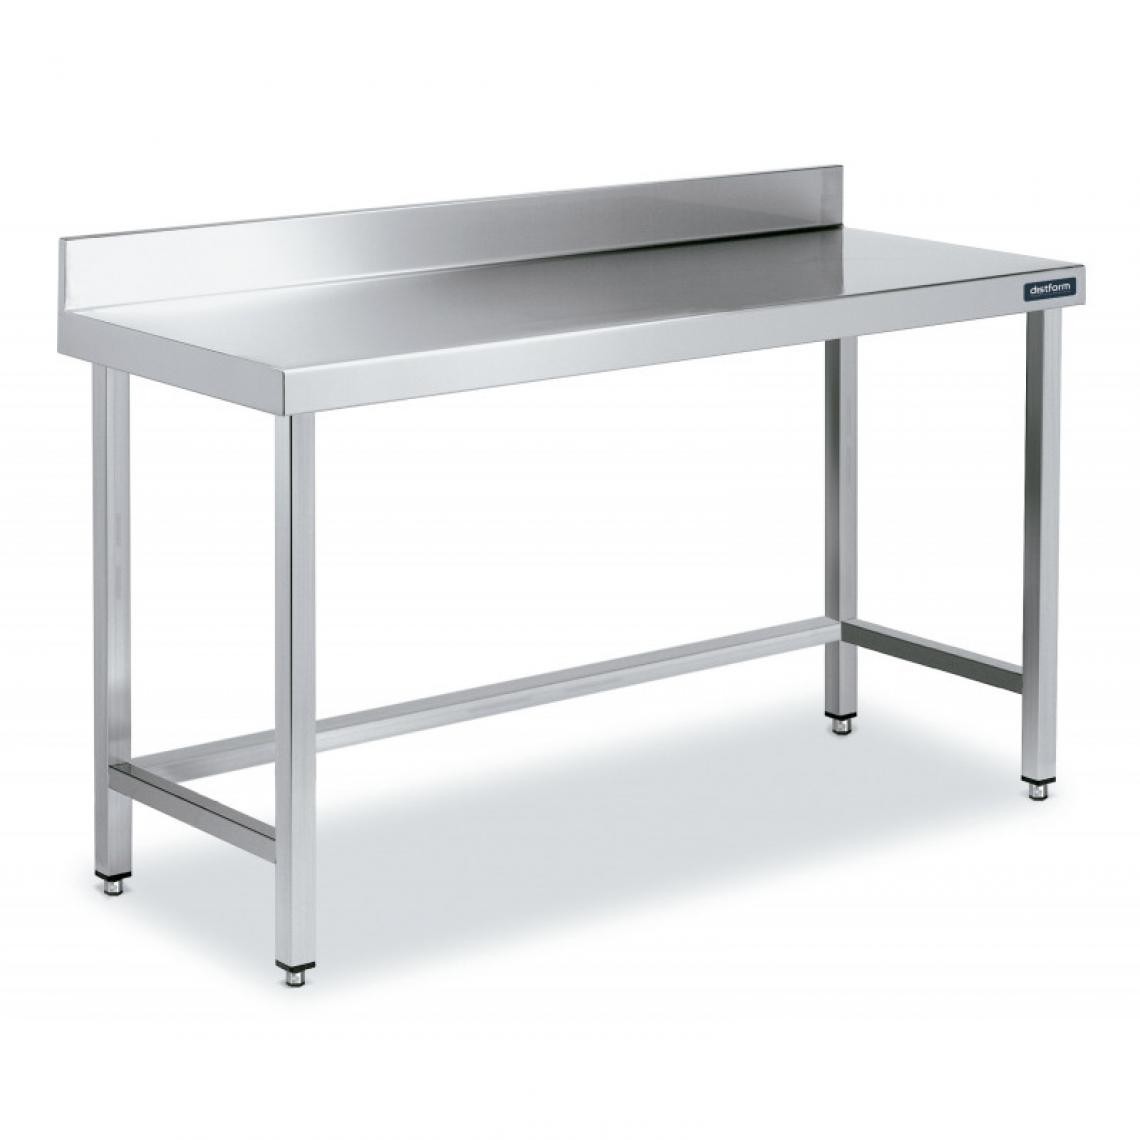 DISTFORM - Table Adossée en Inox avec Renforts Profondeur 700 mm - Distform - Acier inoxydable1400x700 - Tables à manger